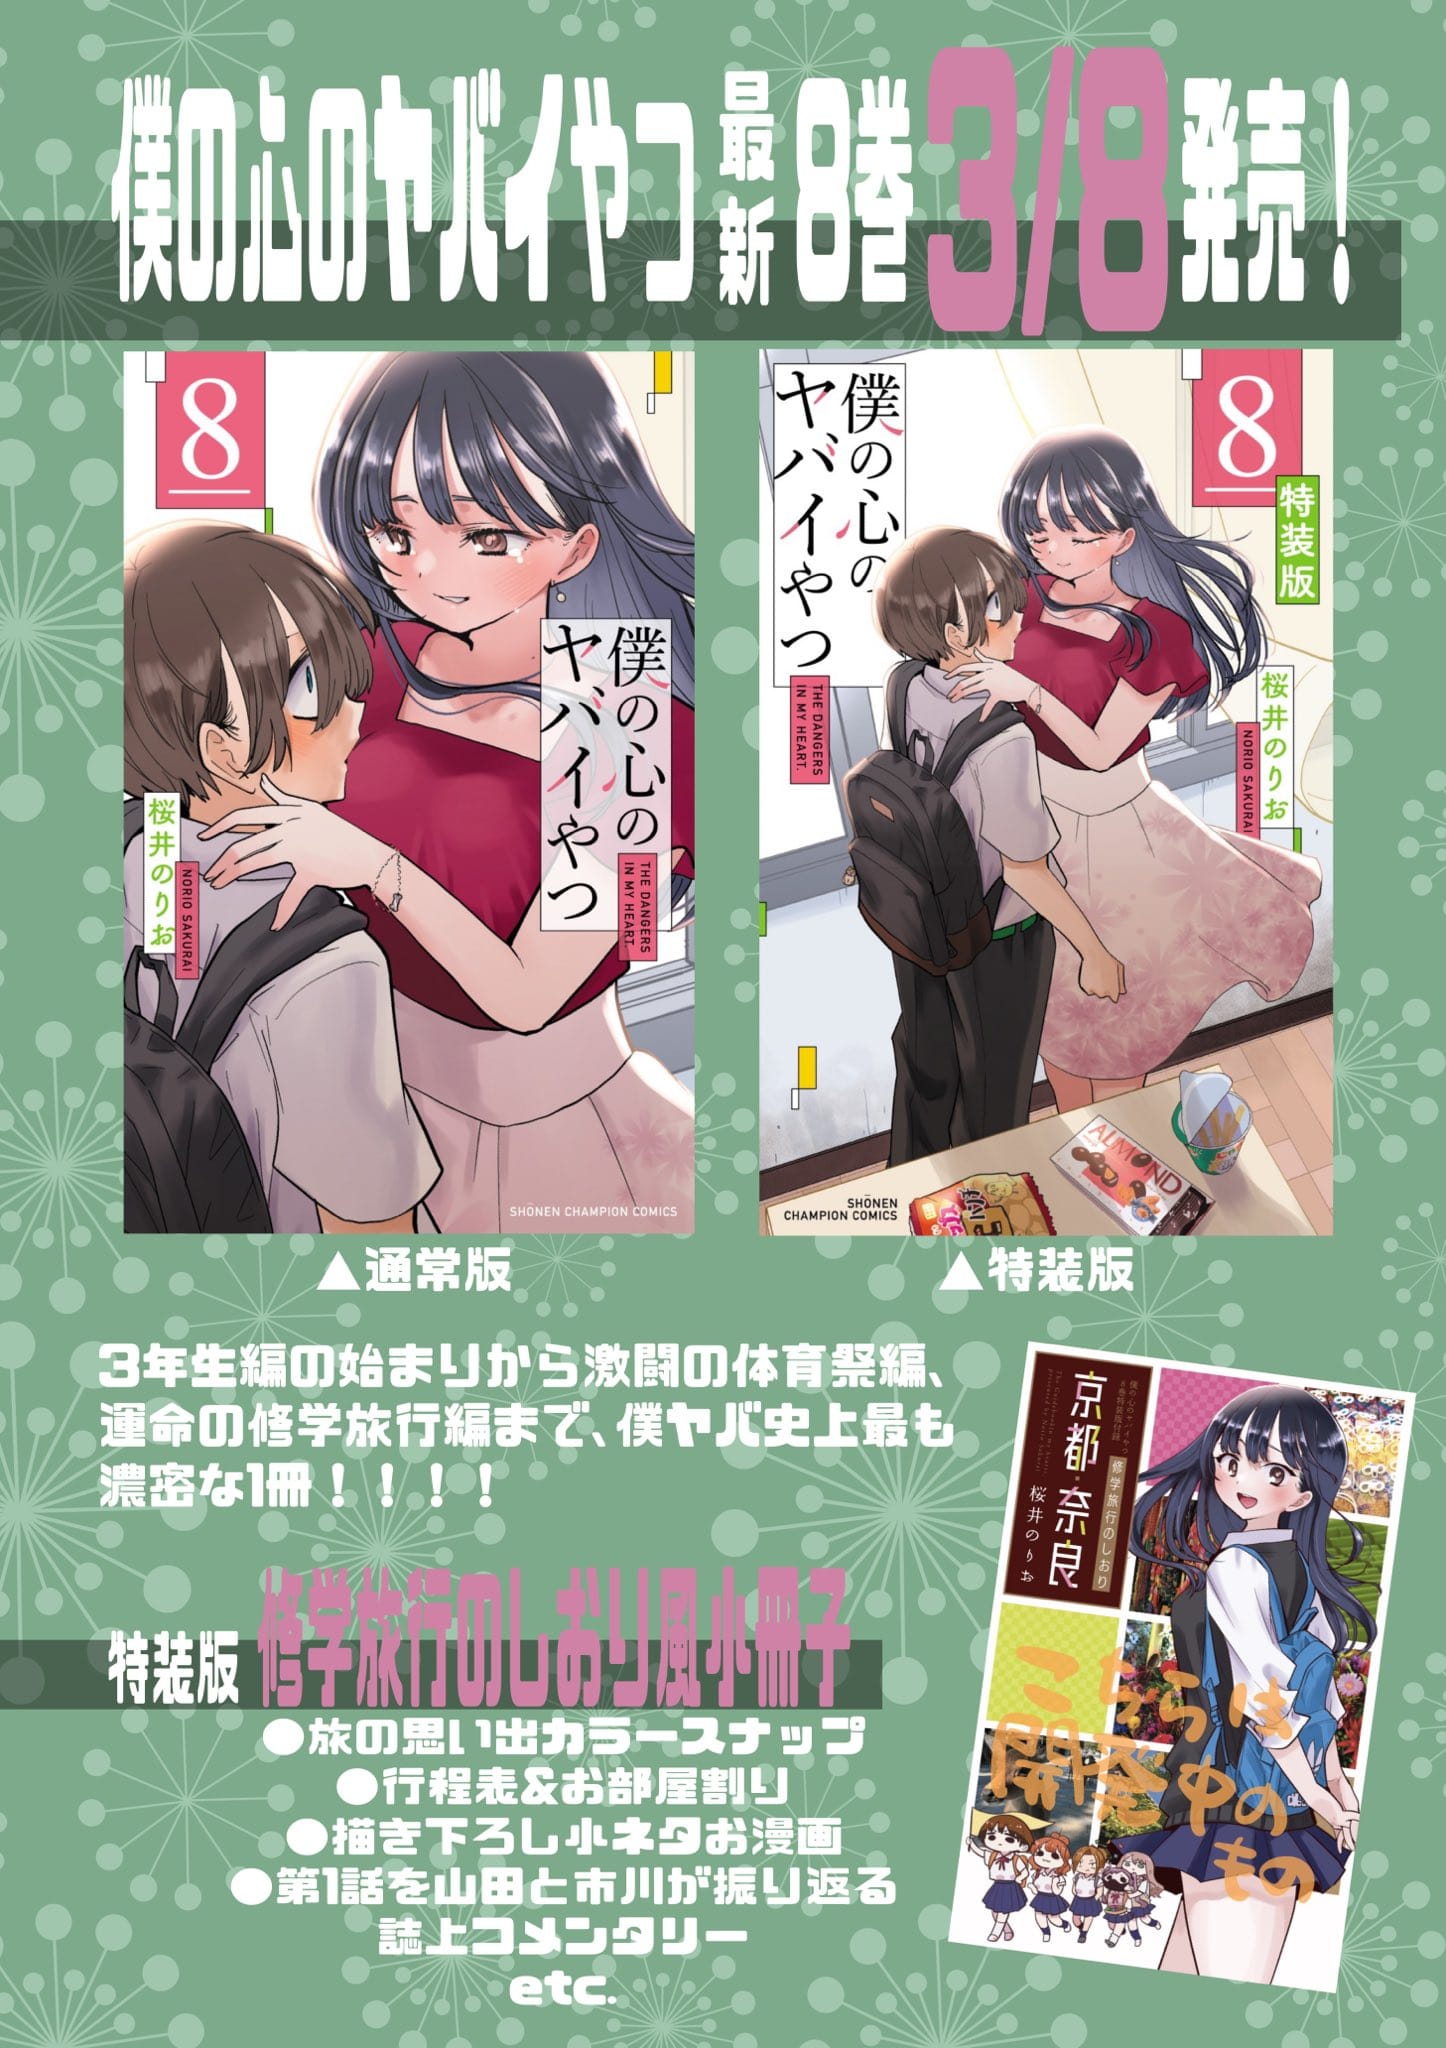 僕の心のヤバイやつ (僕ヤバ) 最新刊 第8巻 3月8日発売! 特装版も!